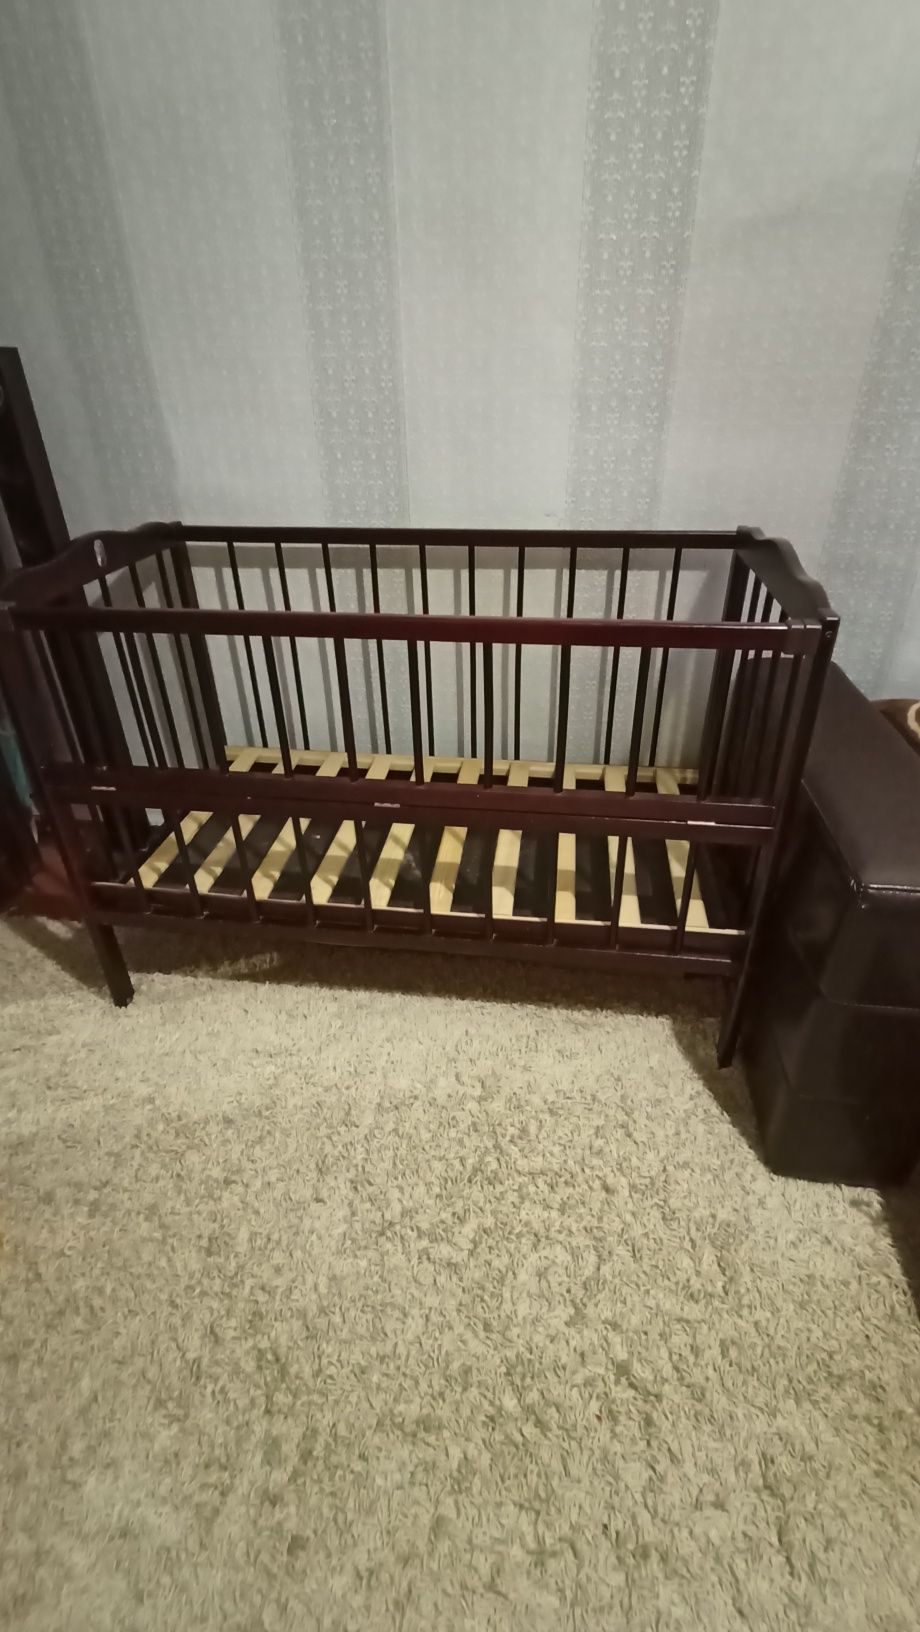 Дитяче ліжечко  1000 грн., бамбуковий матрасик 350 грн новий